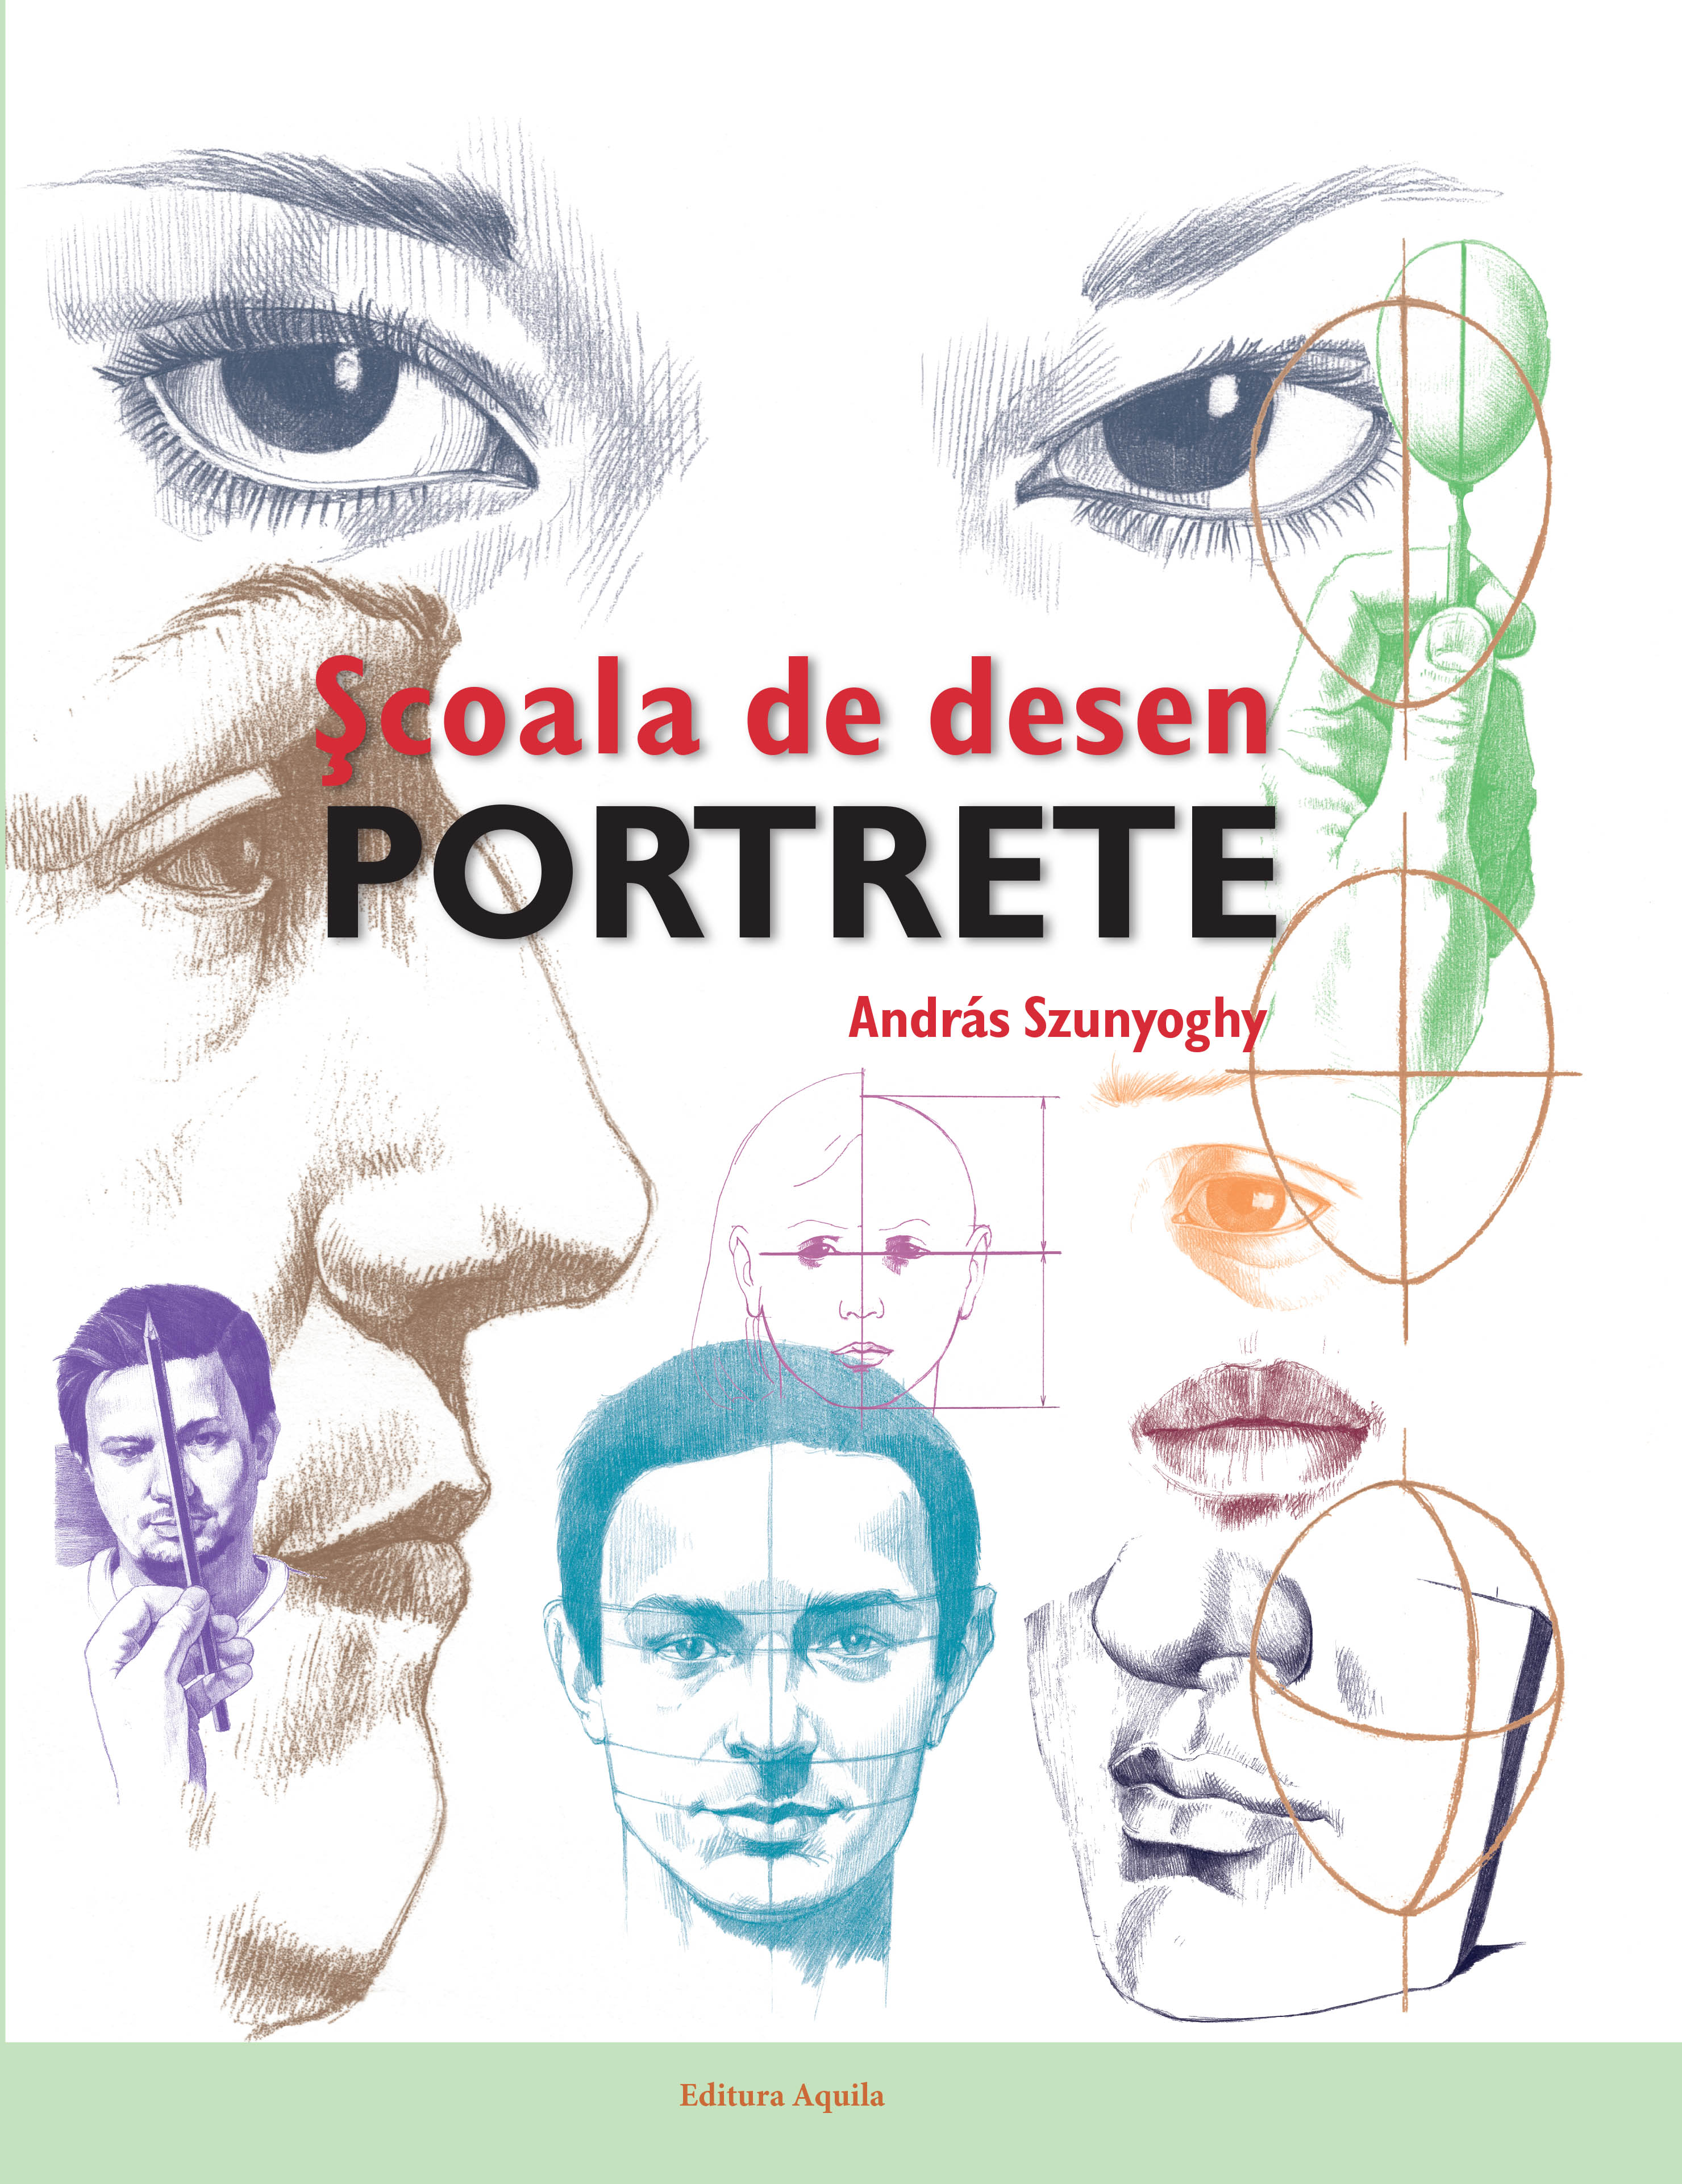 Scoala de desen. Portrete | Aquila poza bestsellers.ro